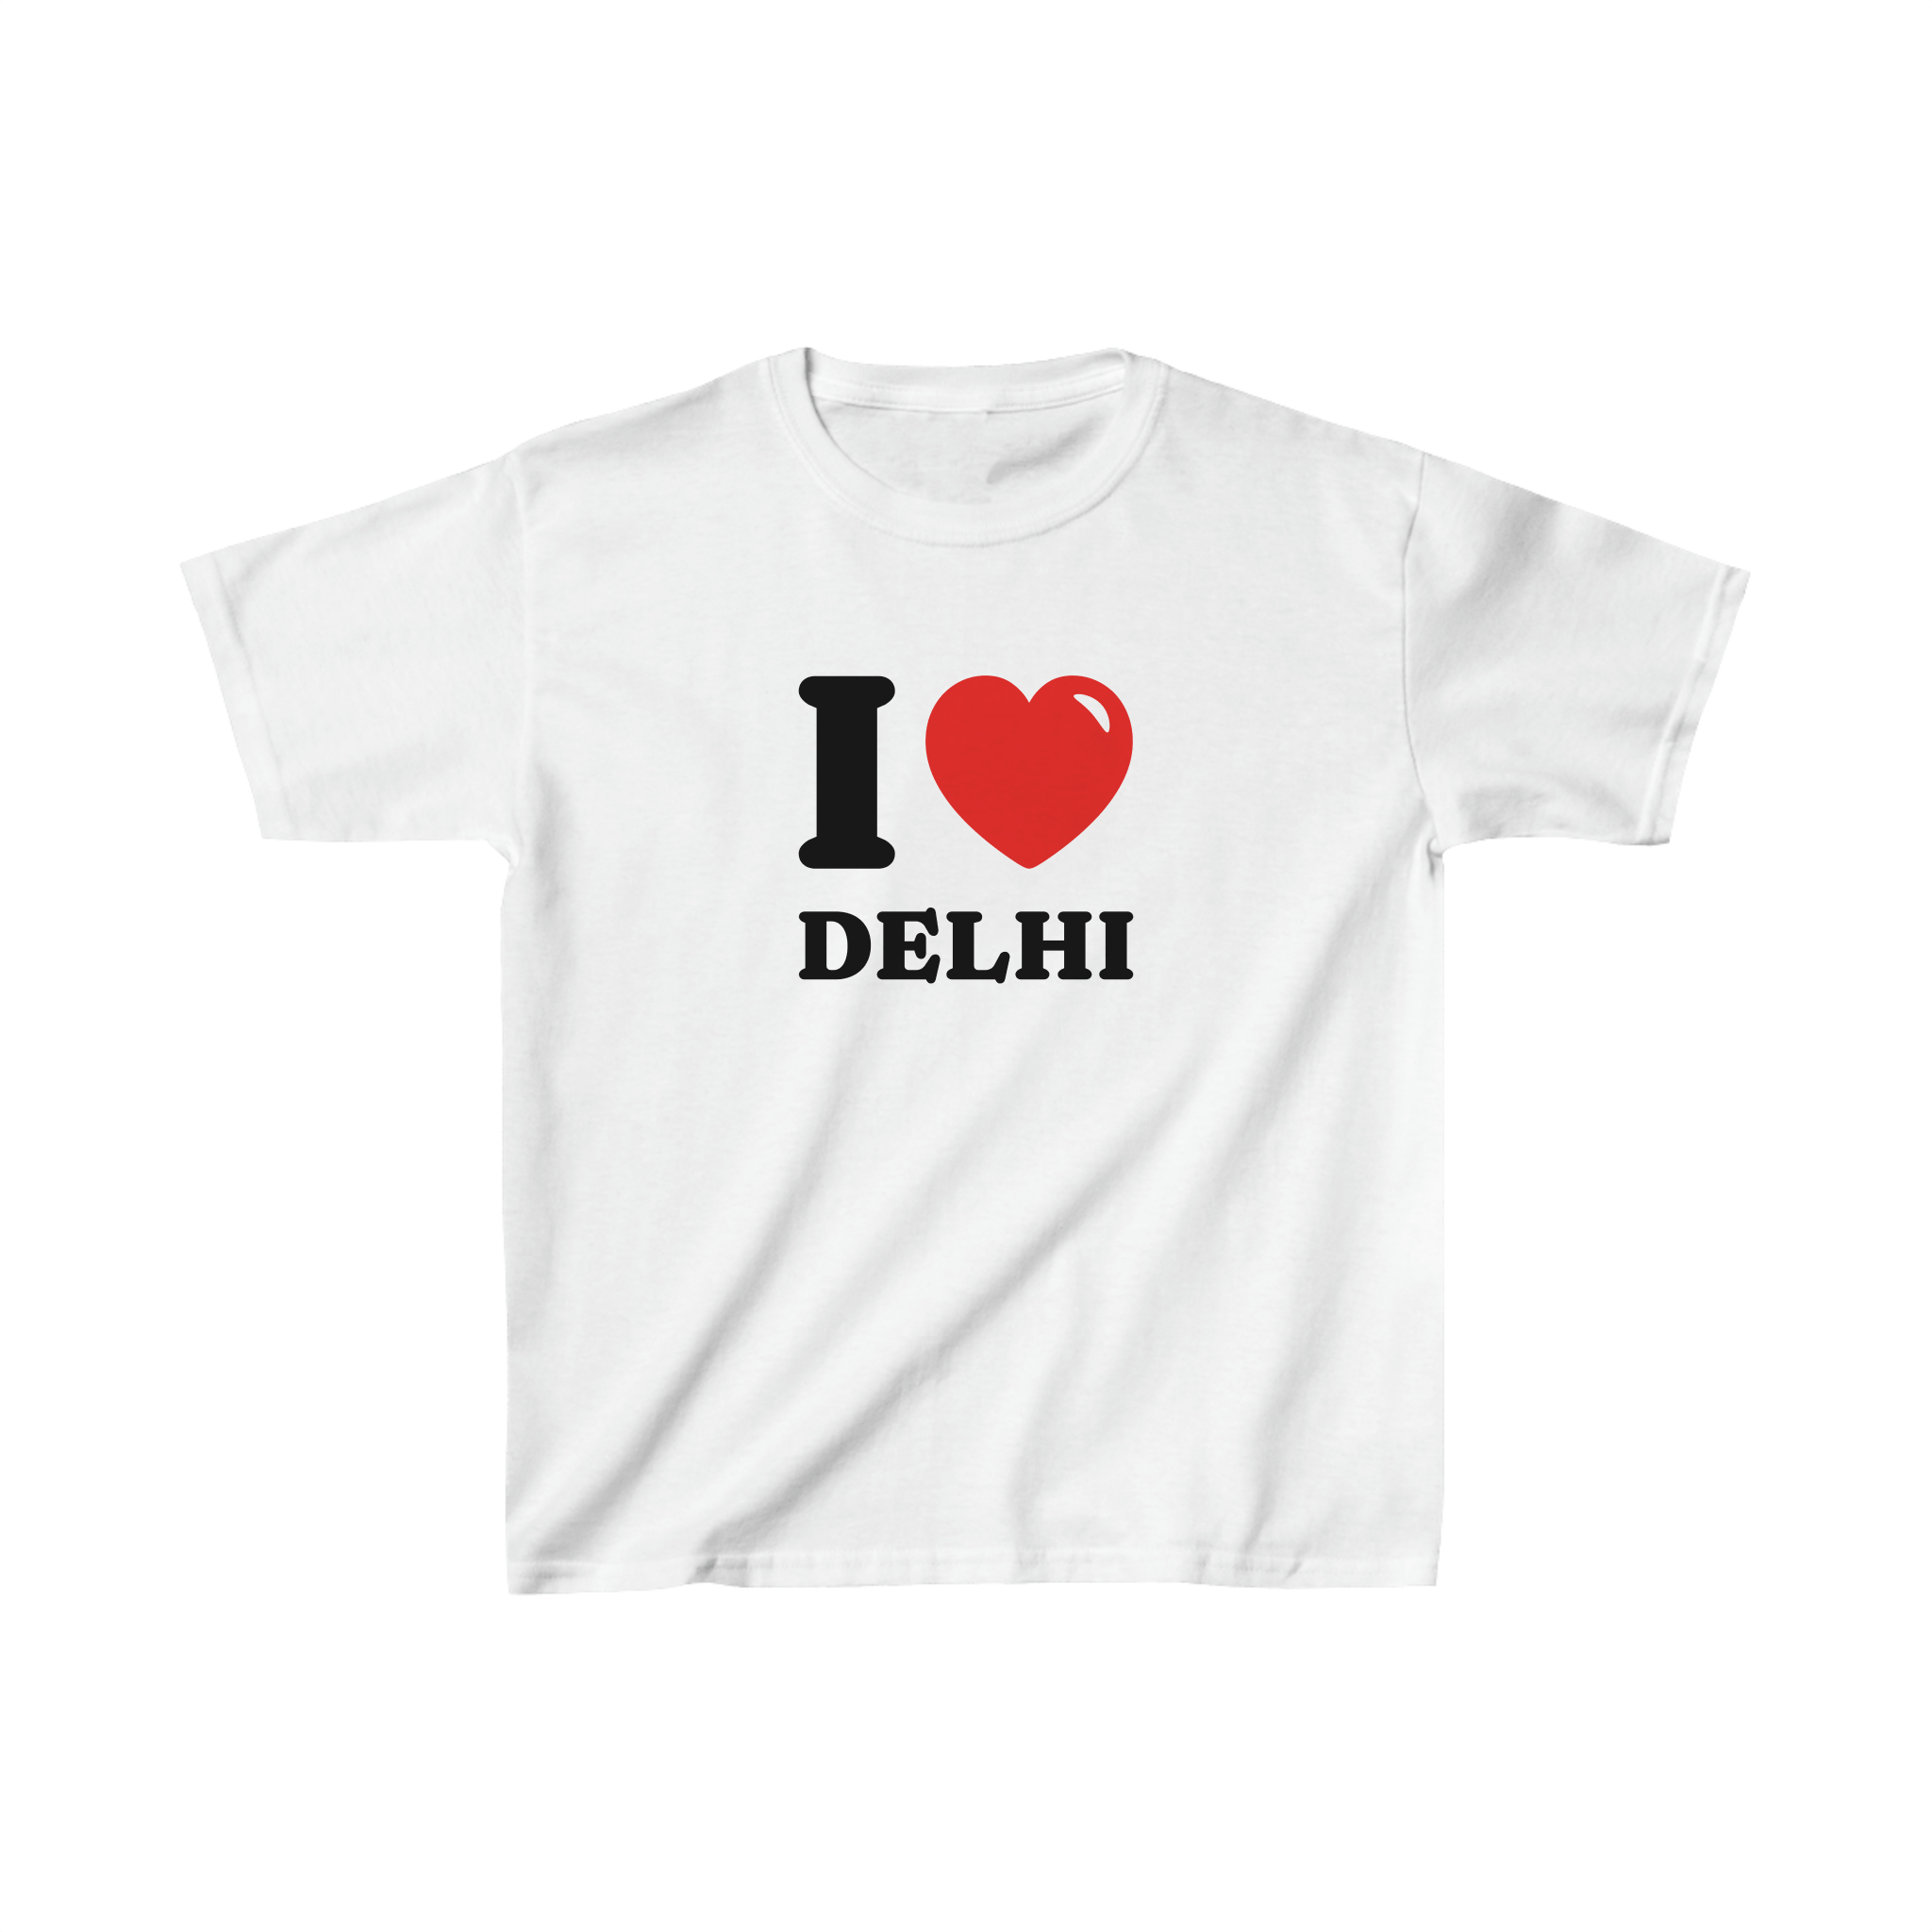 'I love Delhi' baby tee - In Print We Trust